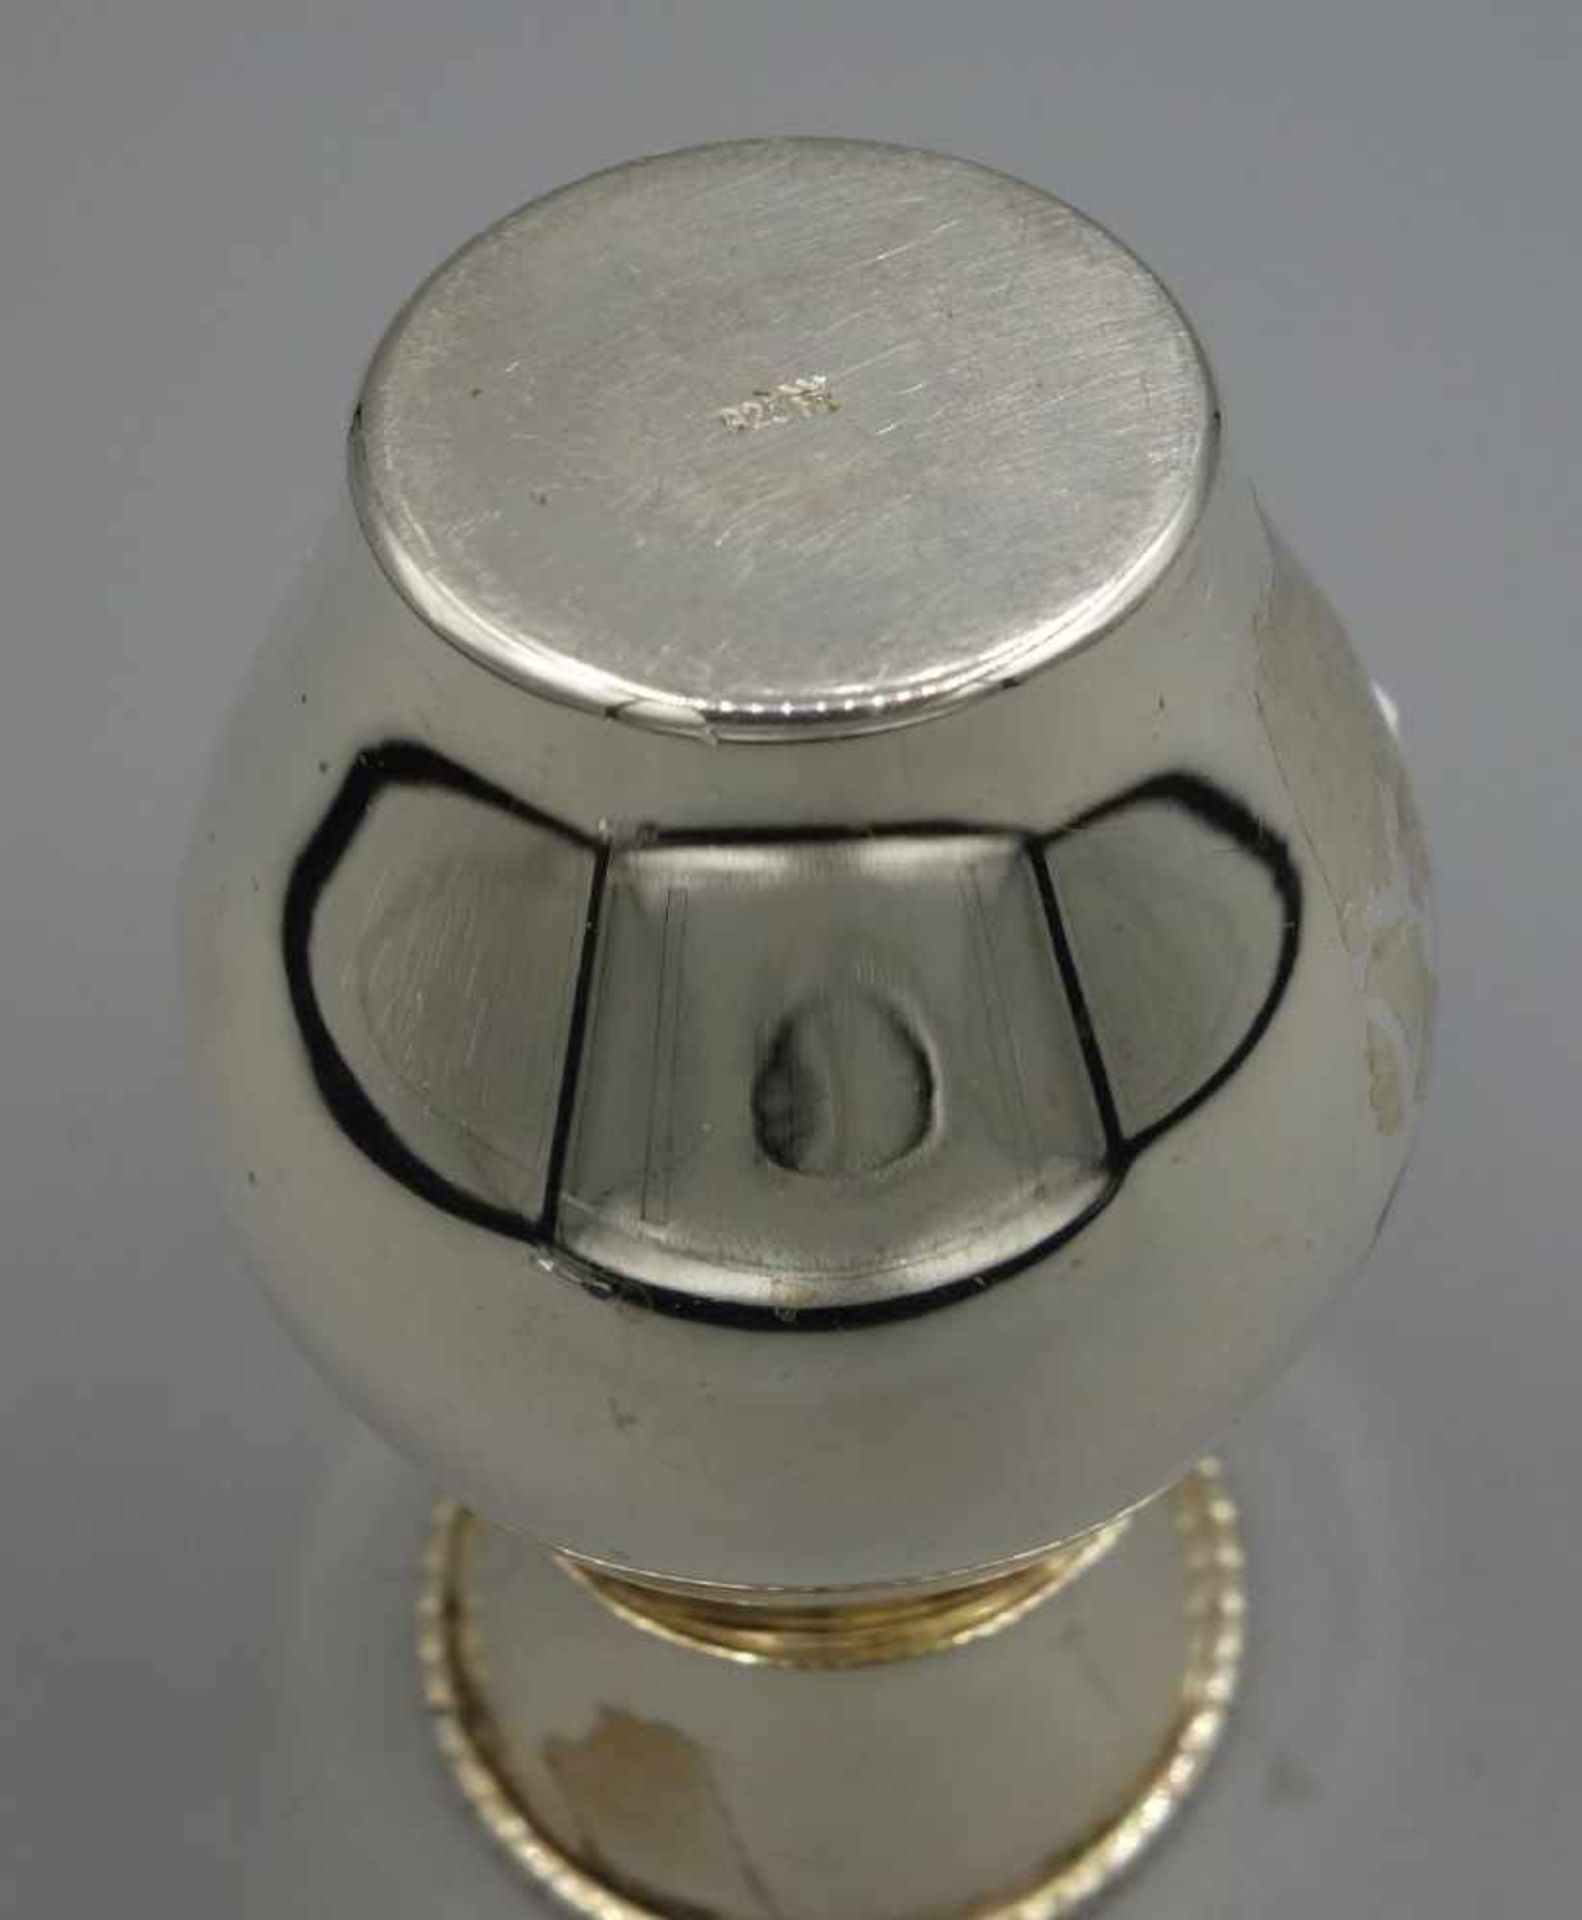 VASE, 925er Silber (32 g), gepunzt mit Feingehaltsangabe und Herstellermarke Hermann Bauer, - Image 3 of 3